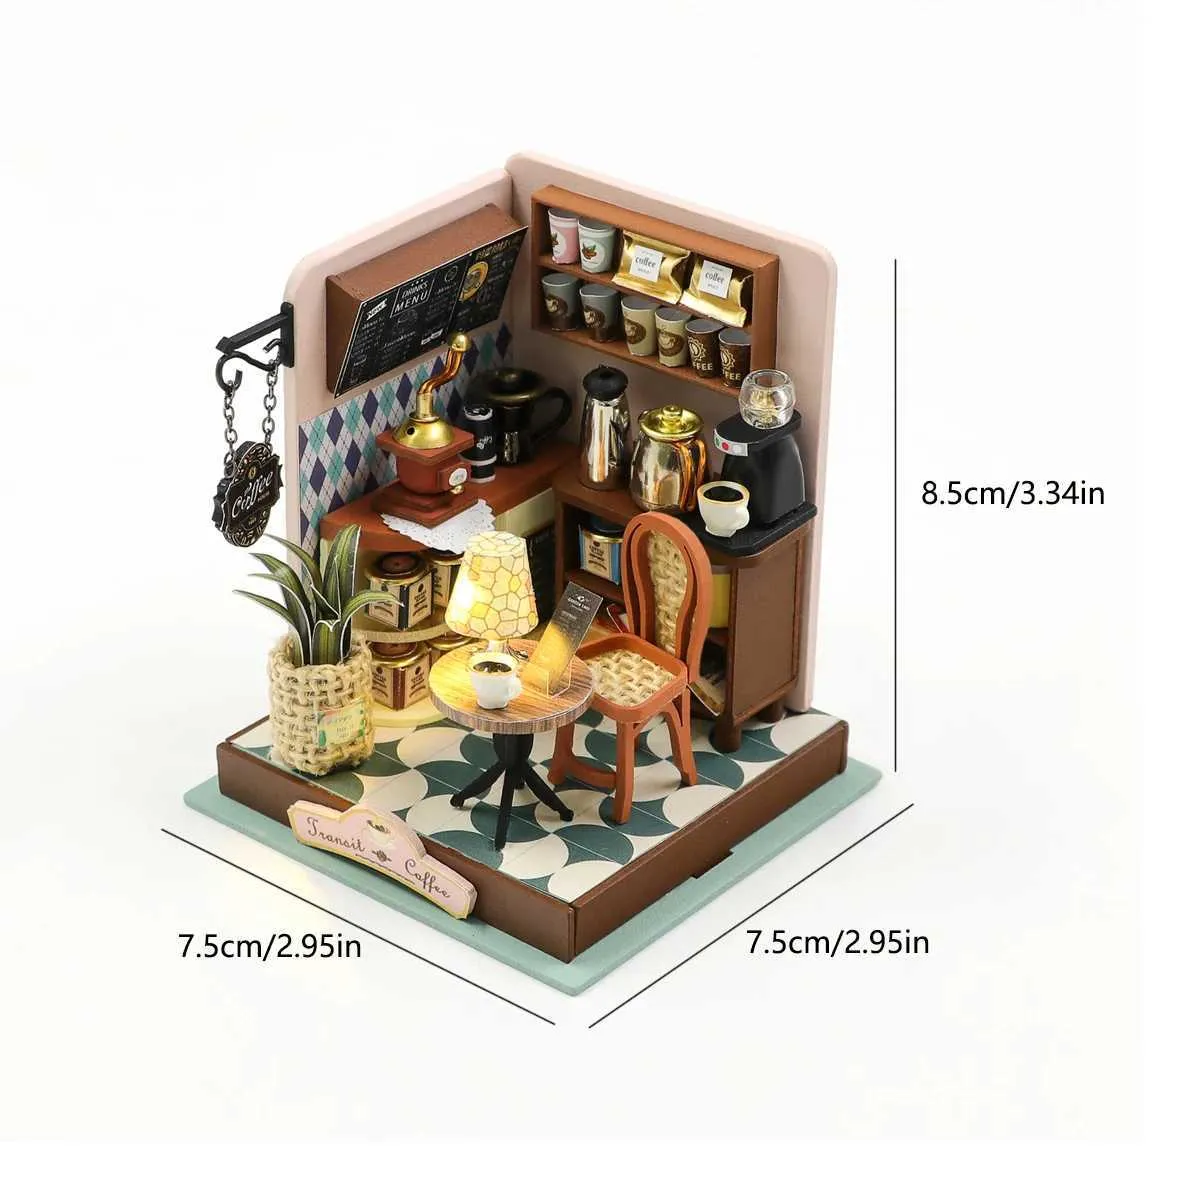 Architecture/Bricolage Maison Café Maison de bébé Kit Mini DIY Fait à la Main 3D Puzzle Assemblage Modèle de Construction Jouets Maison Chambre Décoration avec Meubles en Bois